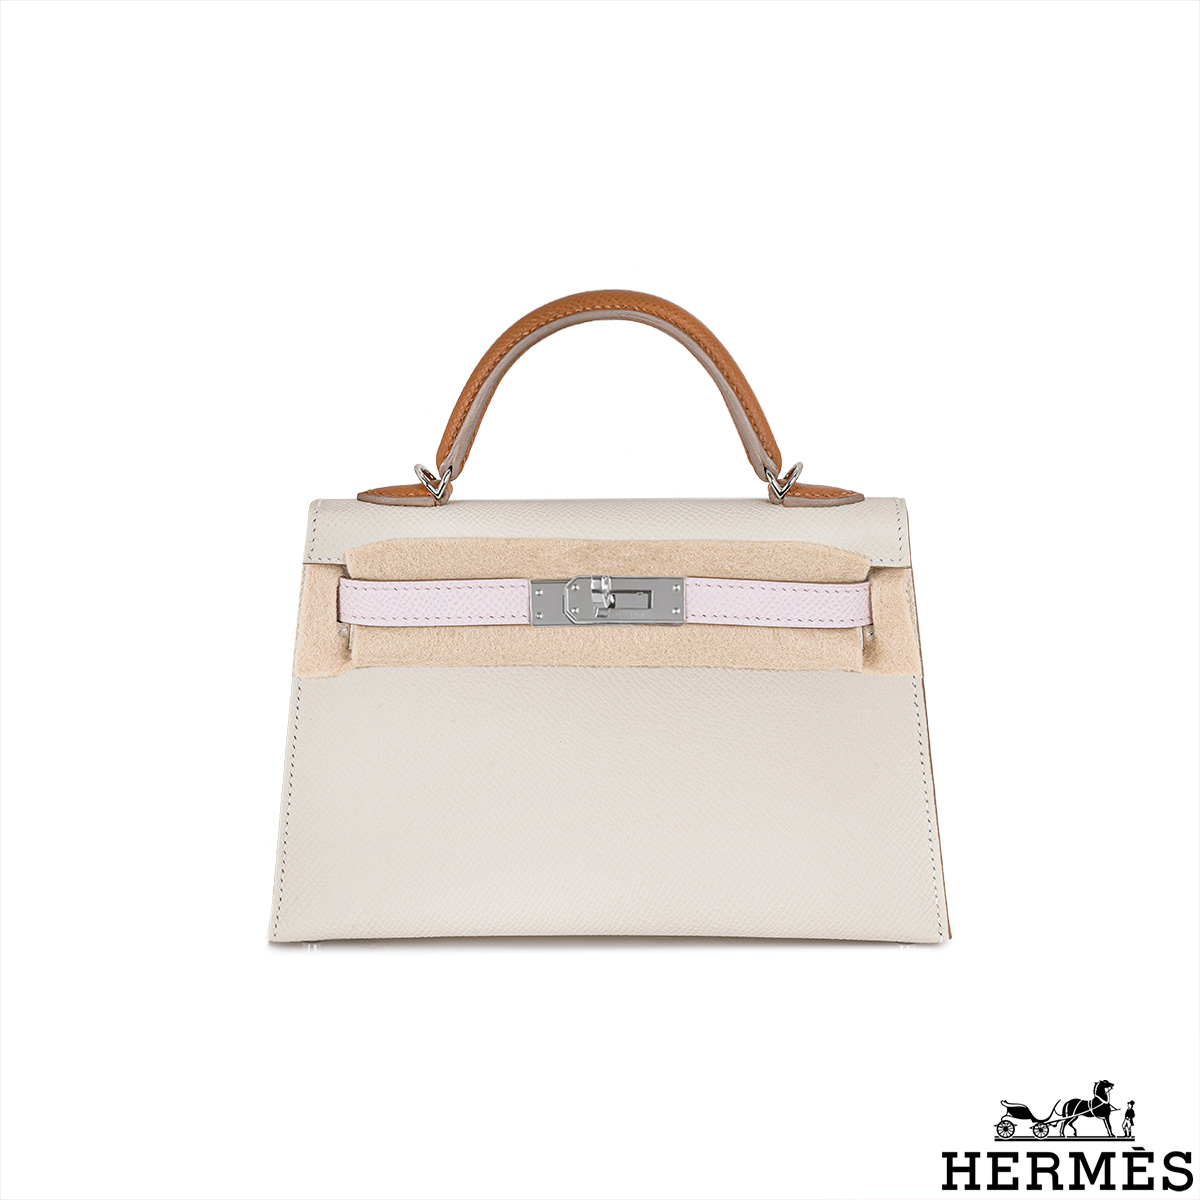 Hermes Kelly Mini 20cm Bag Pink Epsom Gold Hardware $2255